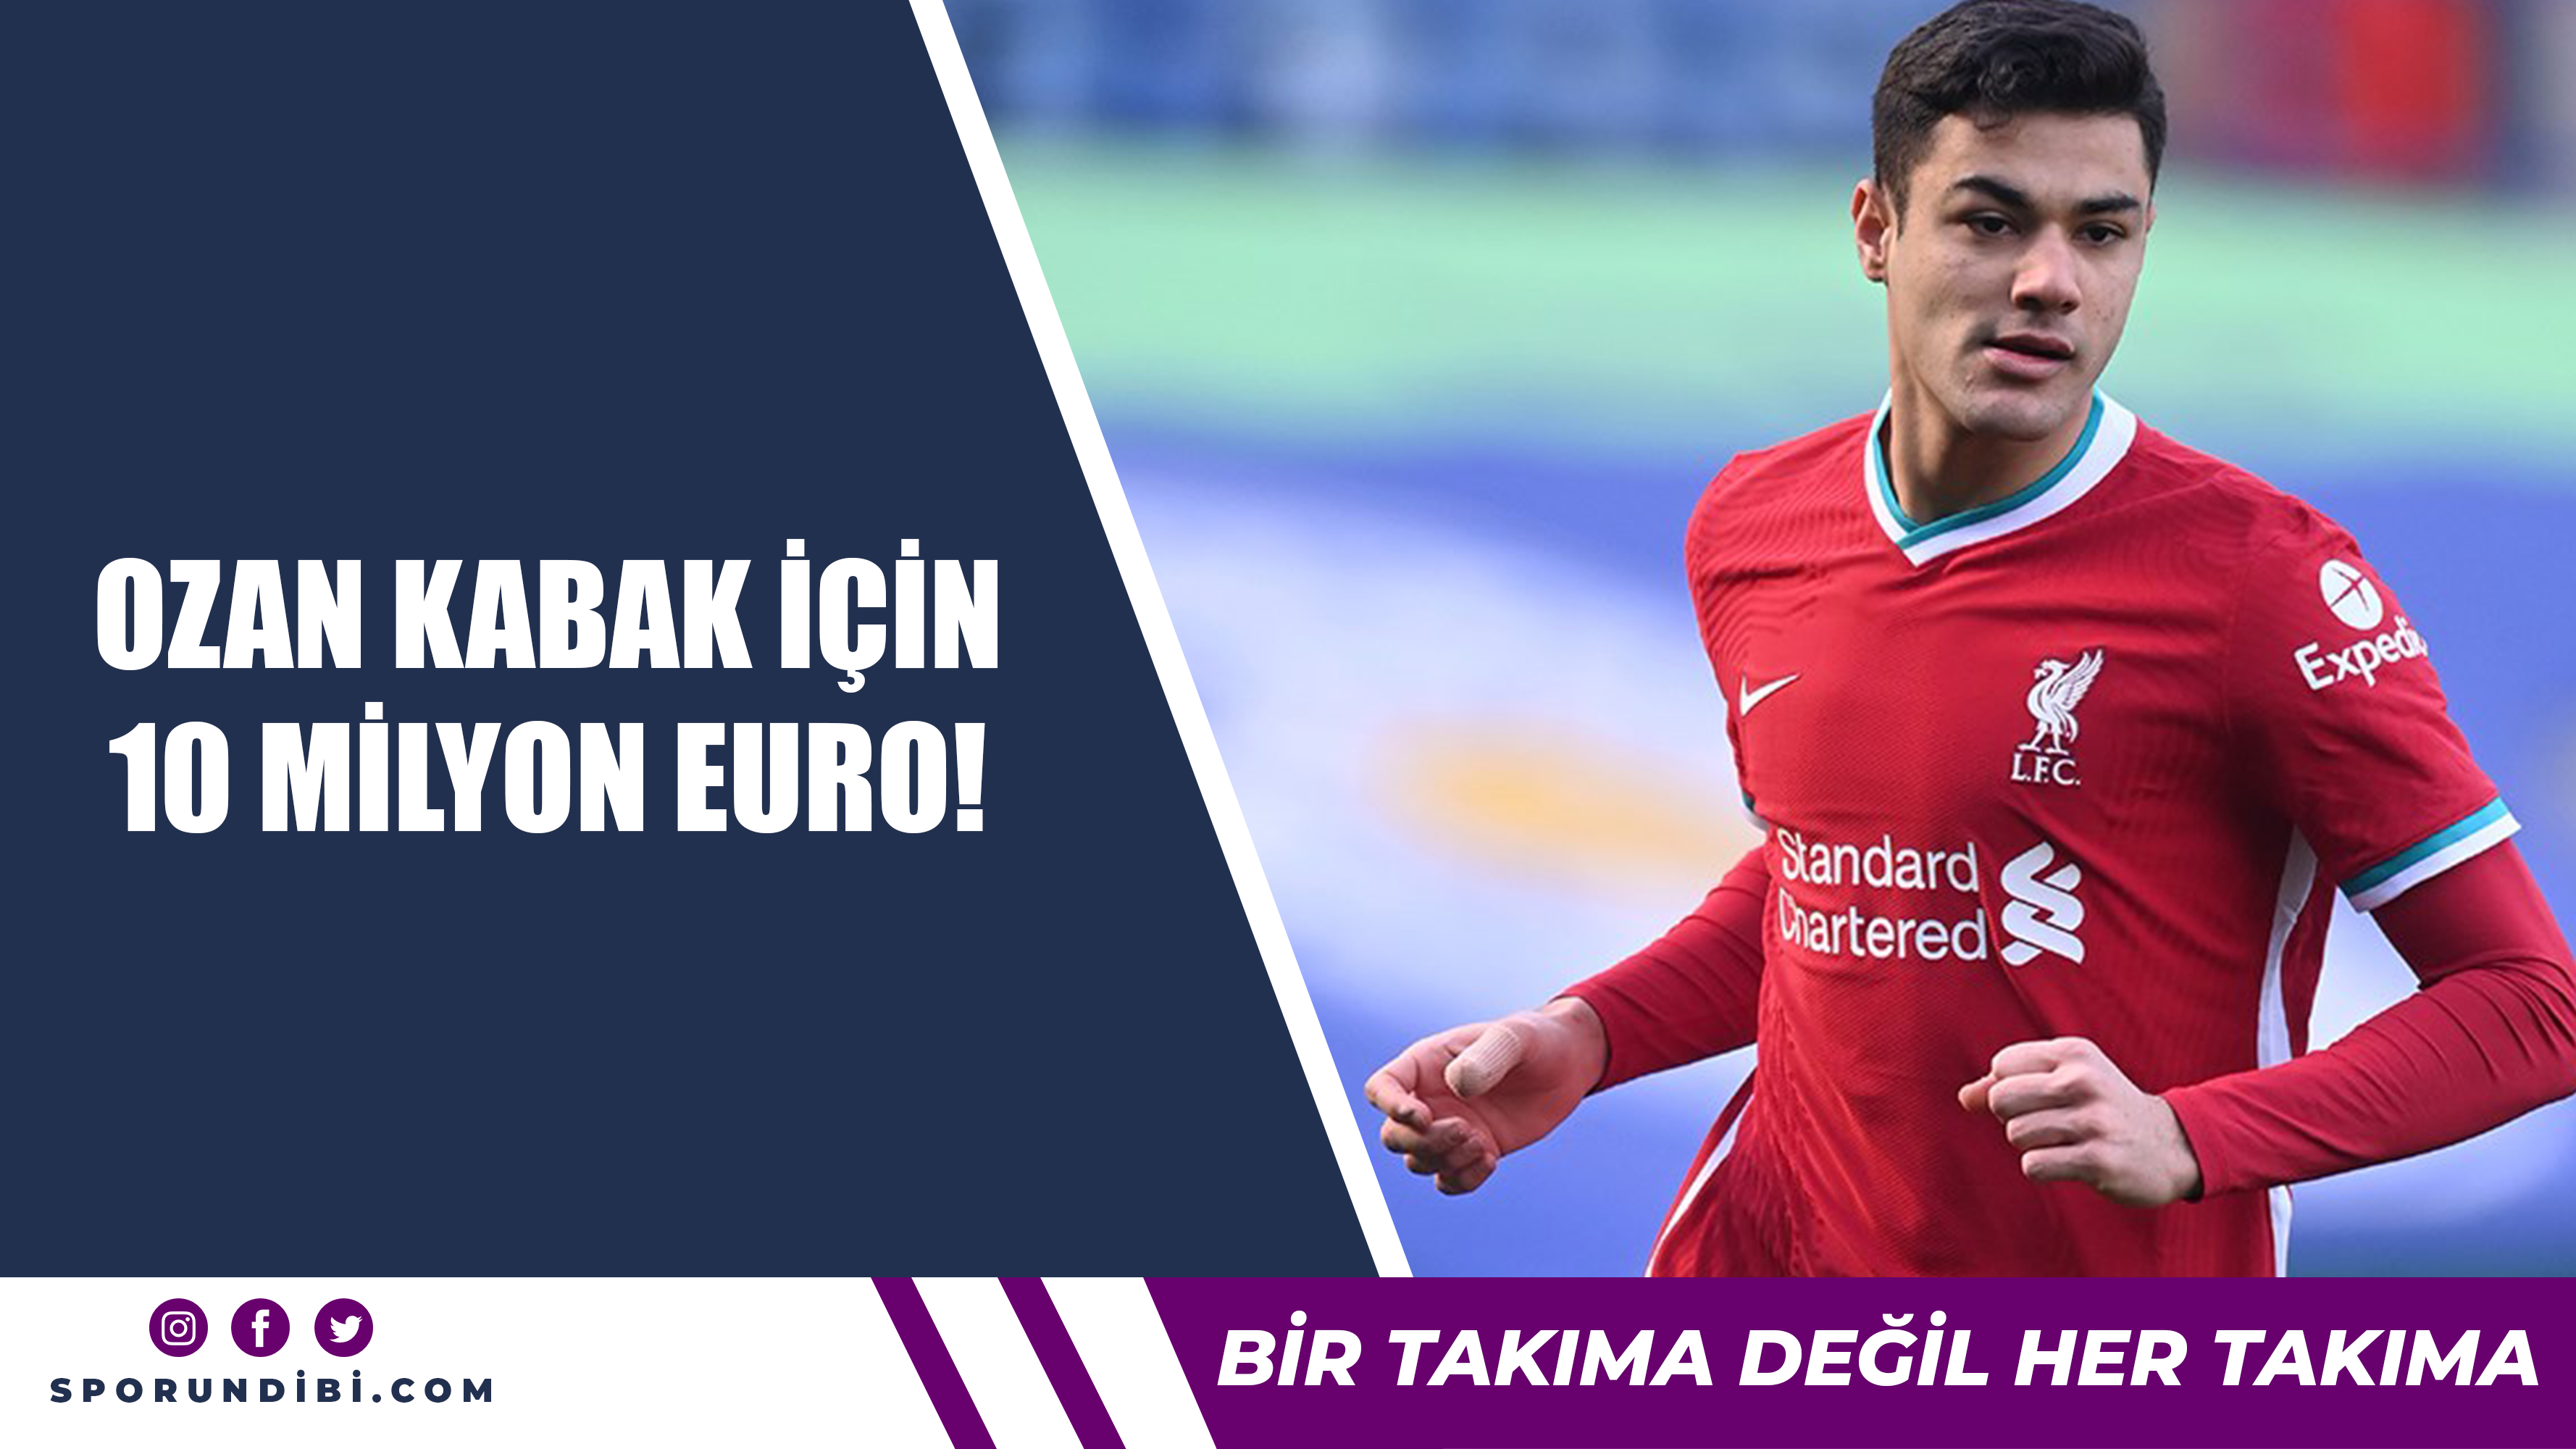 Ozan Kabak için 10 milyon euro!